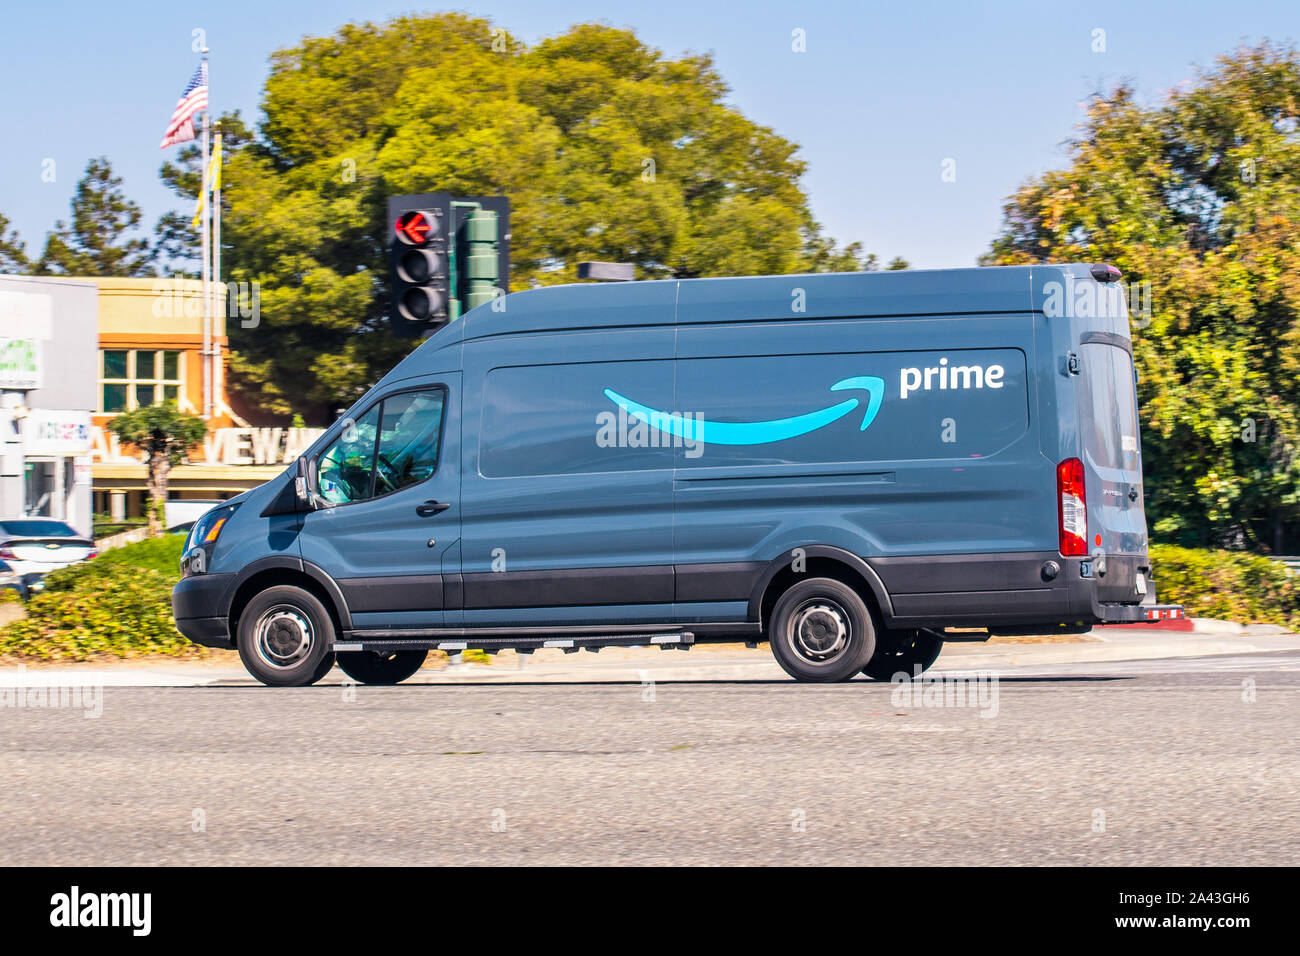 Amazon furgone immagini e fotografie stock ad alta risoluzione - Alamy